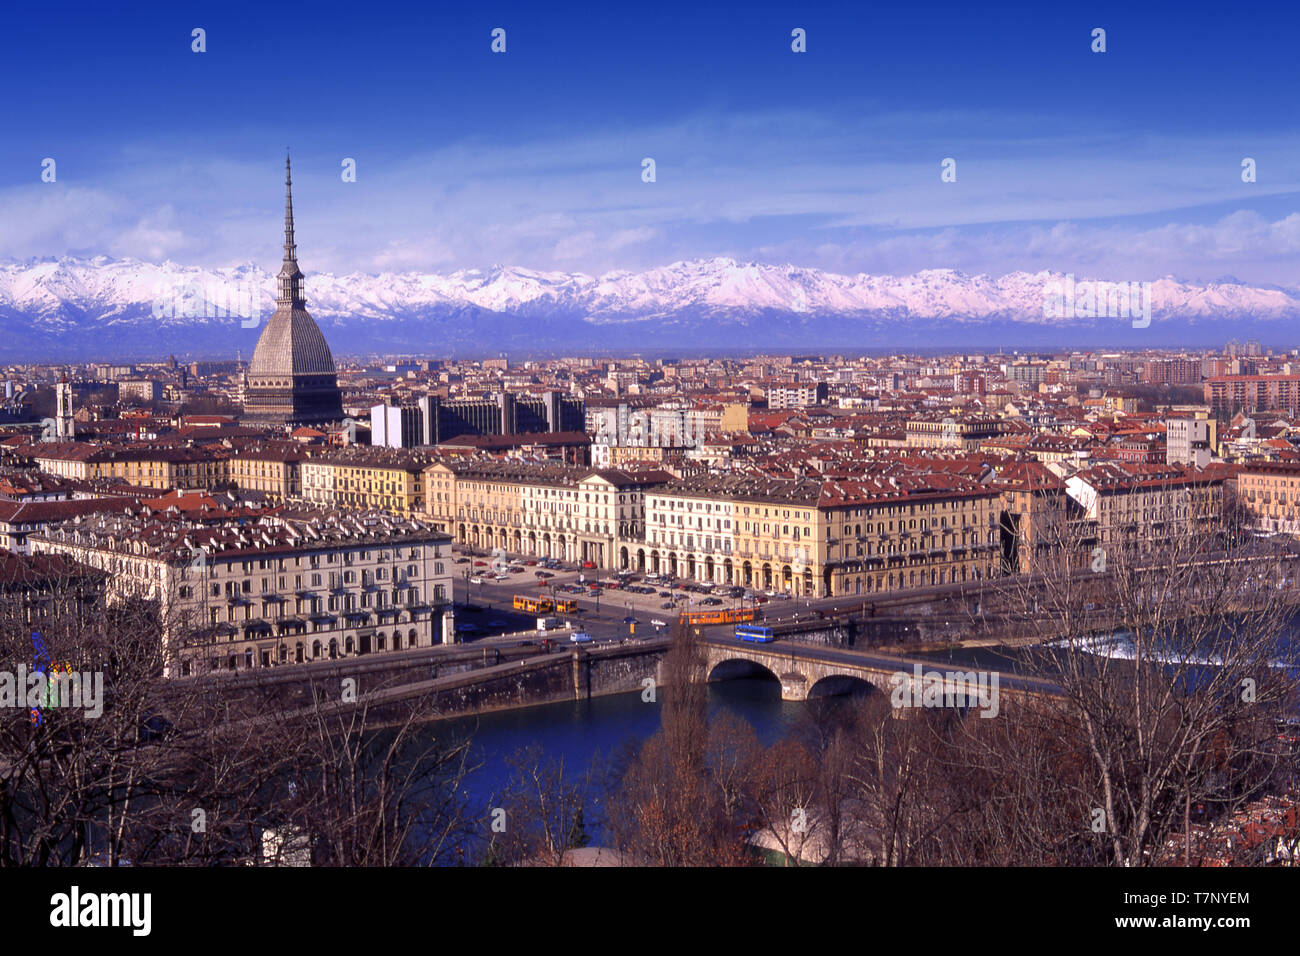 Torino, Italia, skyline della città con edificio simbolo Mole Antonelliana e il fiume Po e Alpi innevate su sfondo. Foto Stock